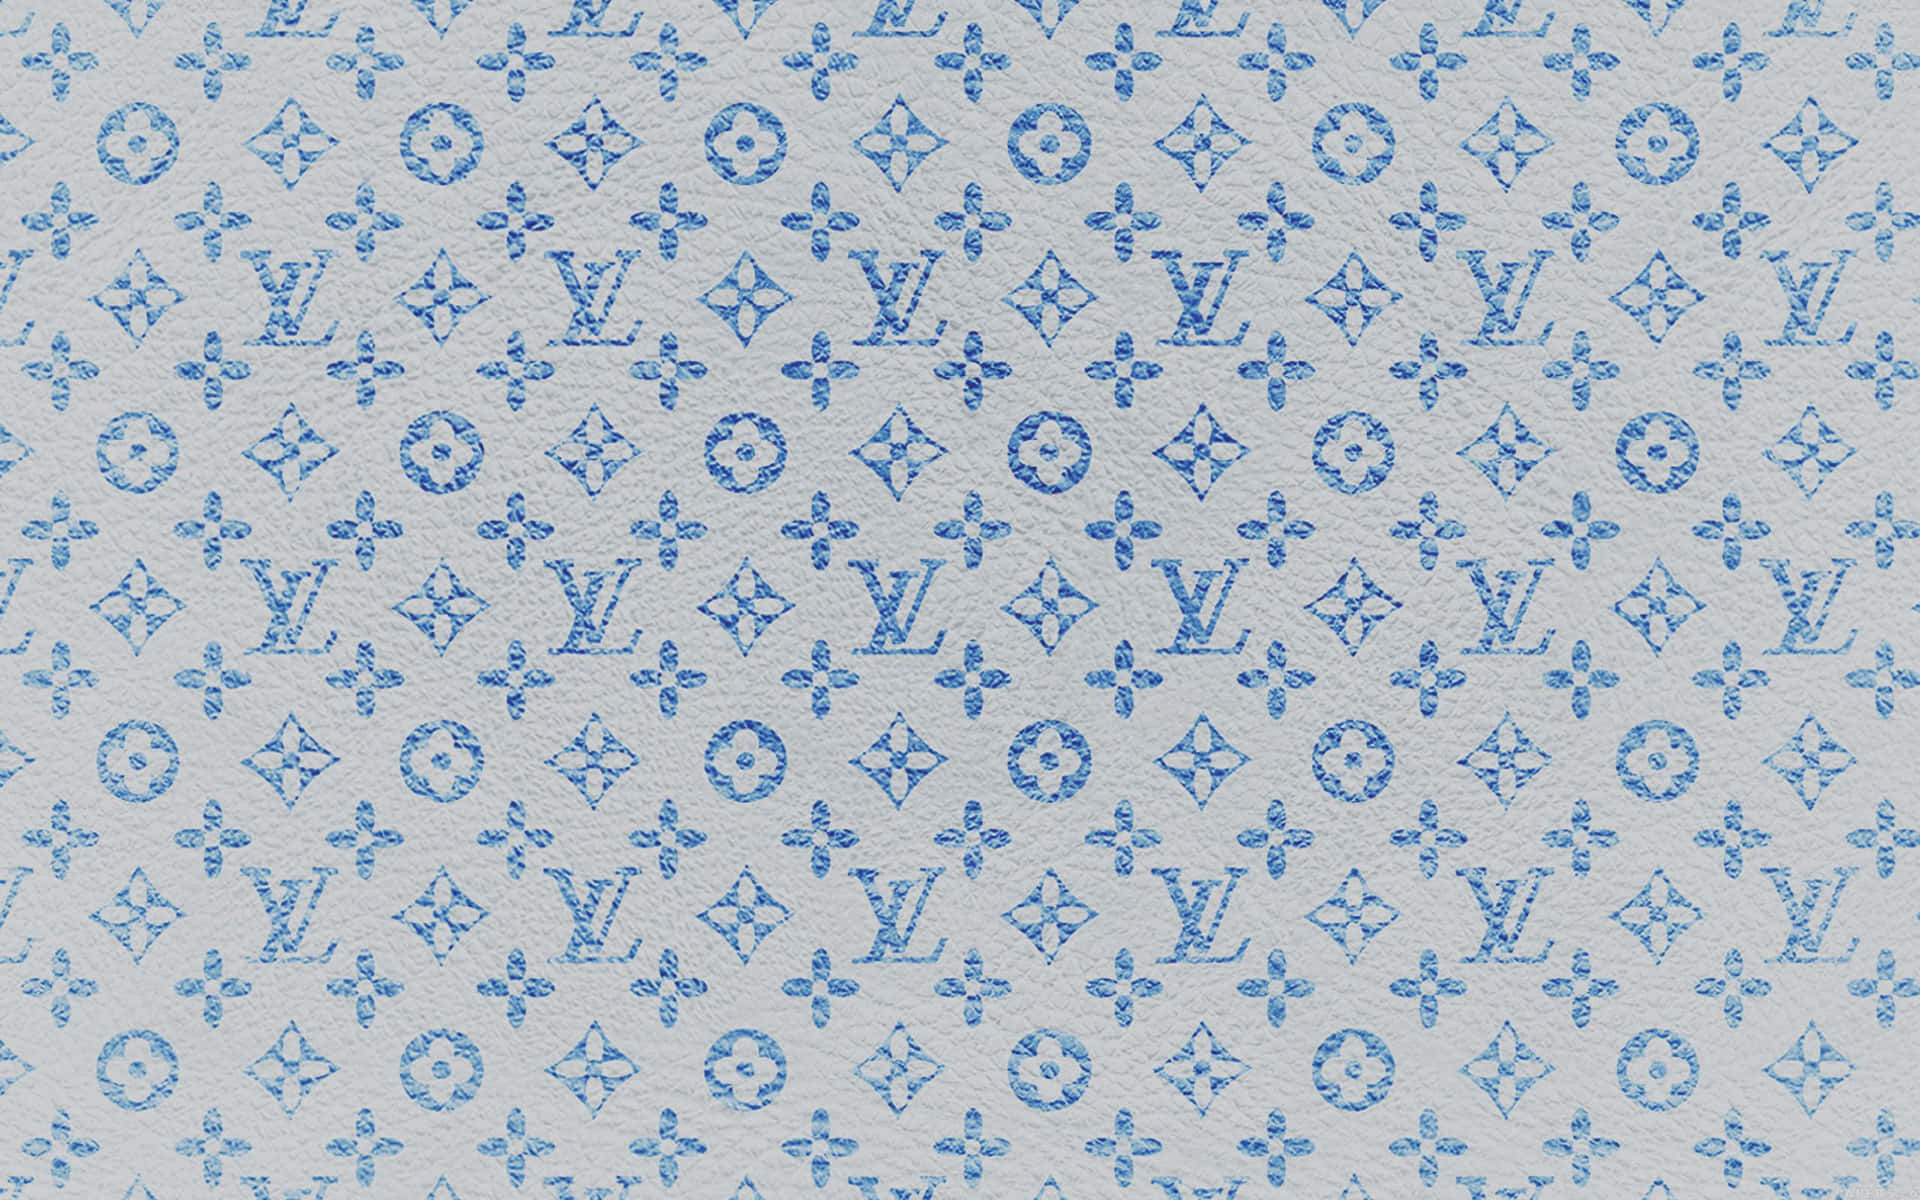 Louis Vuitton Mønster 2560 X 1600 Wallpaper